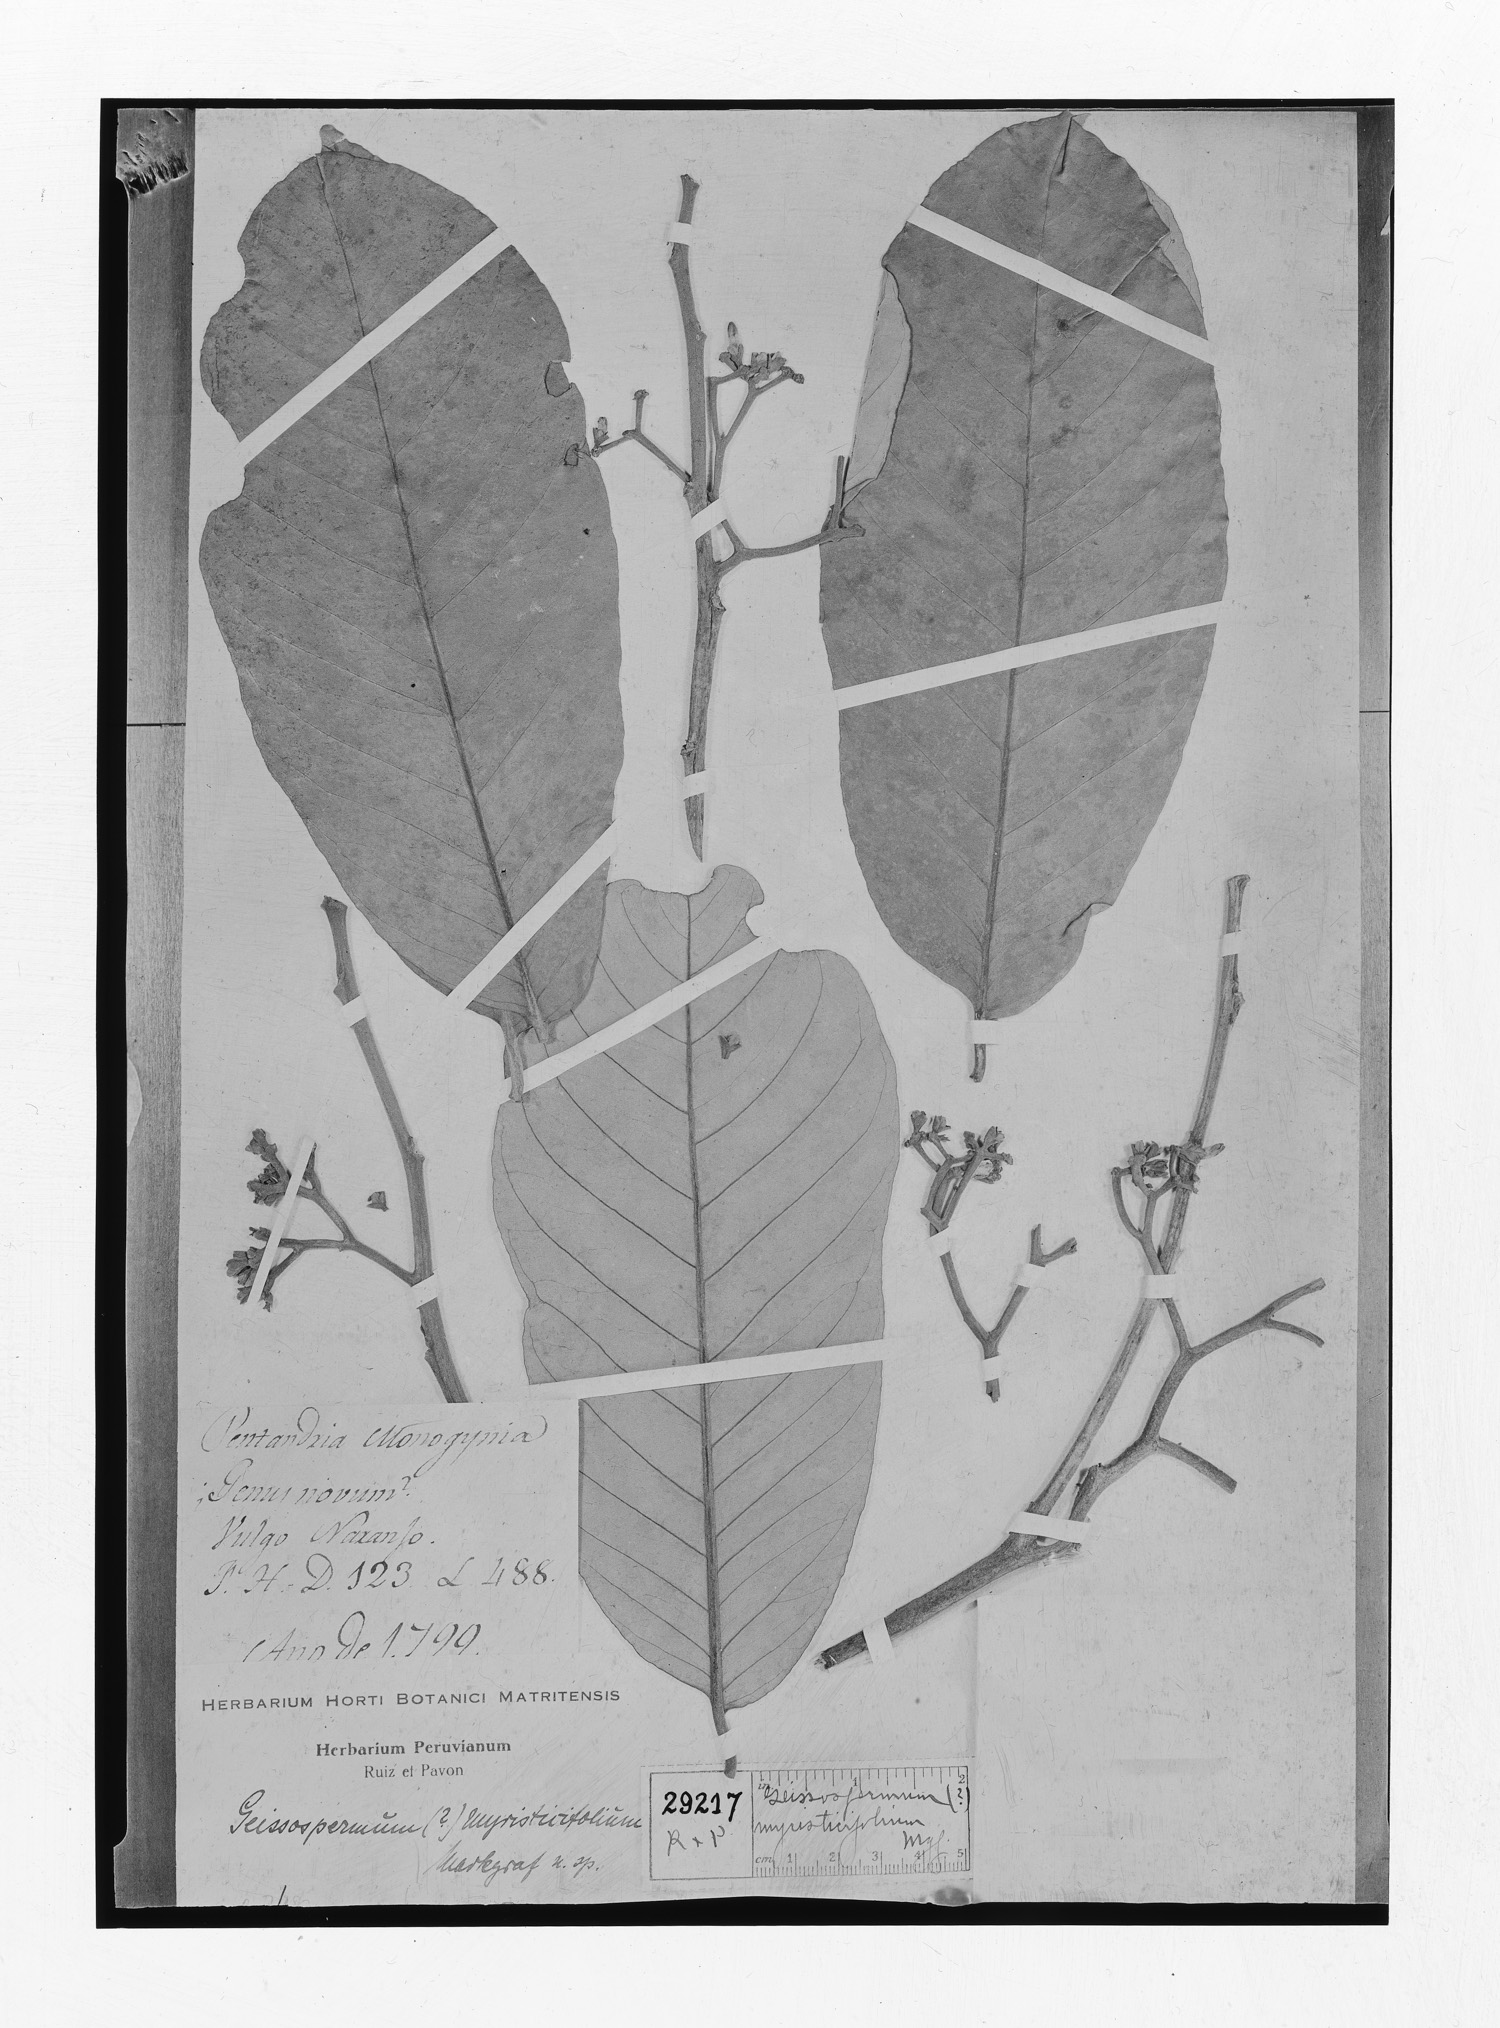 Aspidosperma myristicifolium image